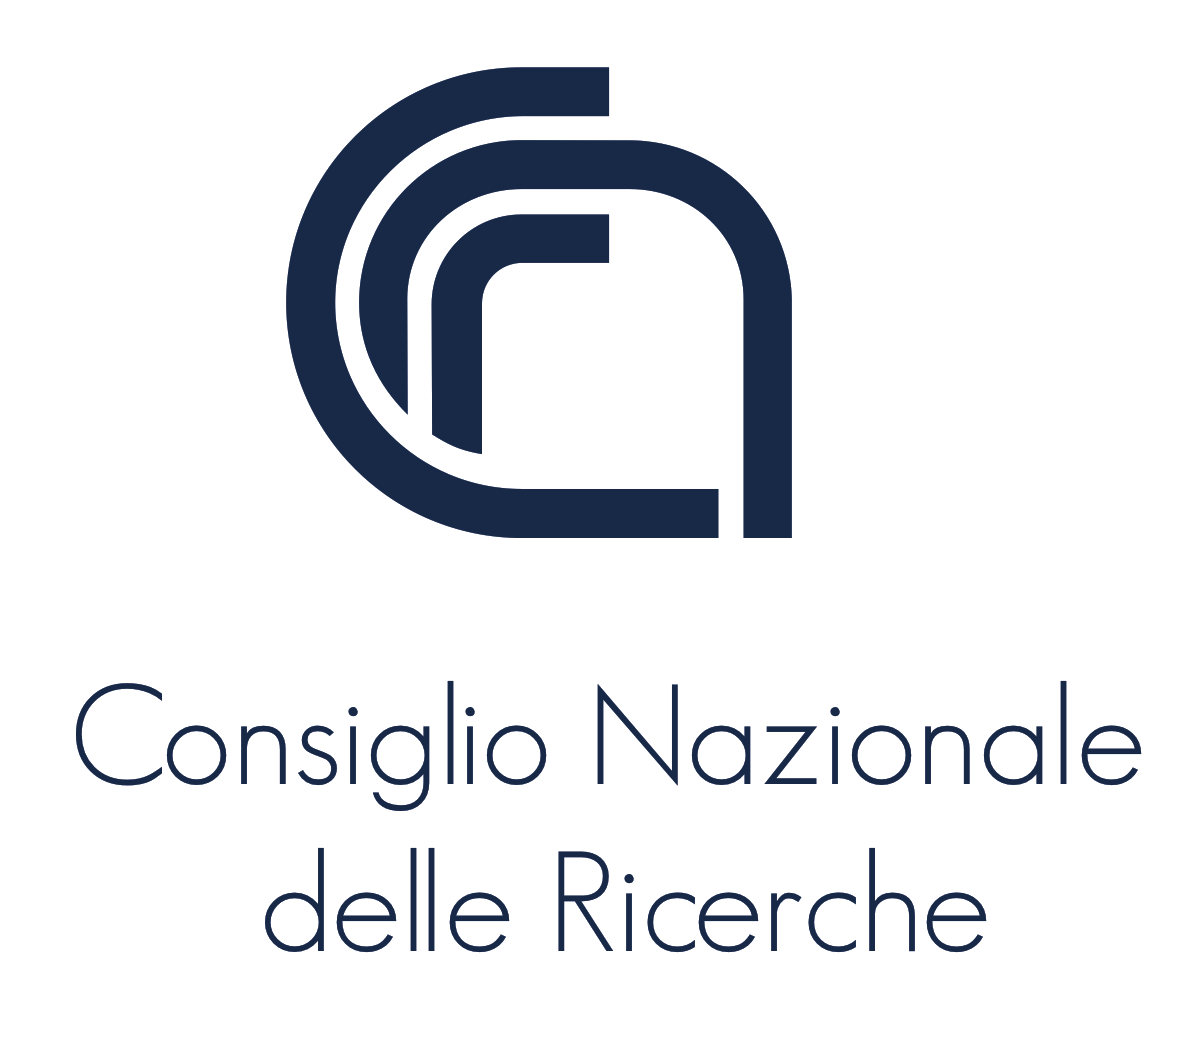 cnr_logo